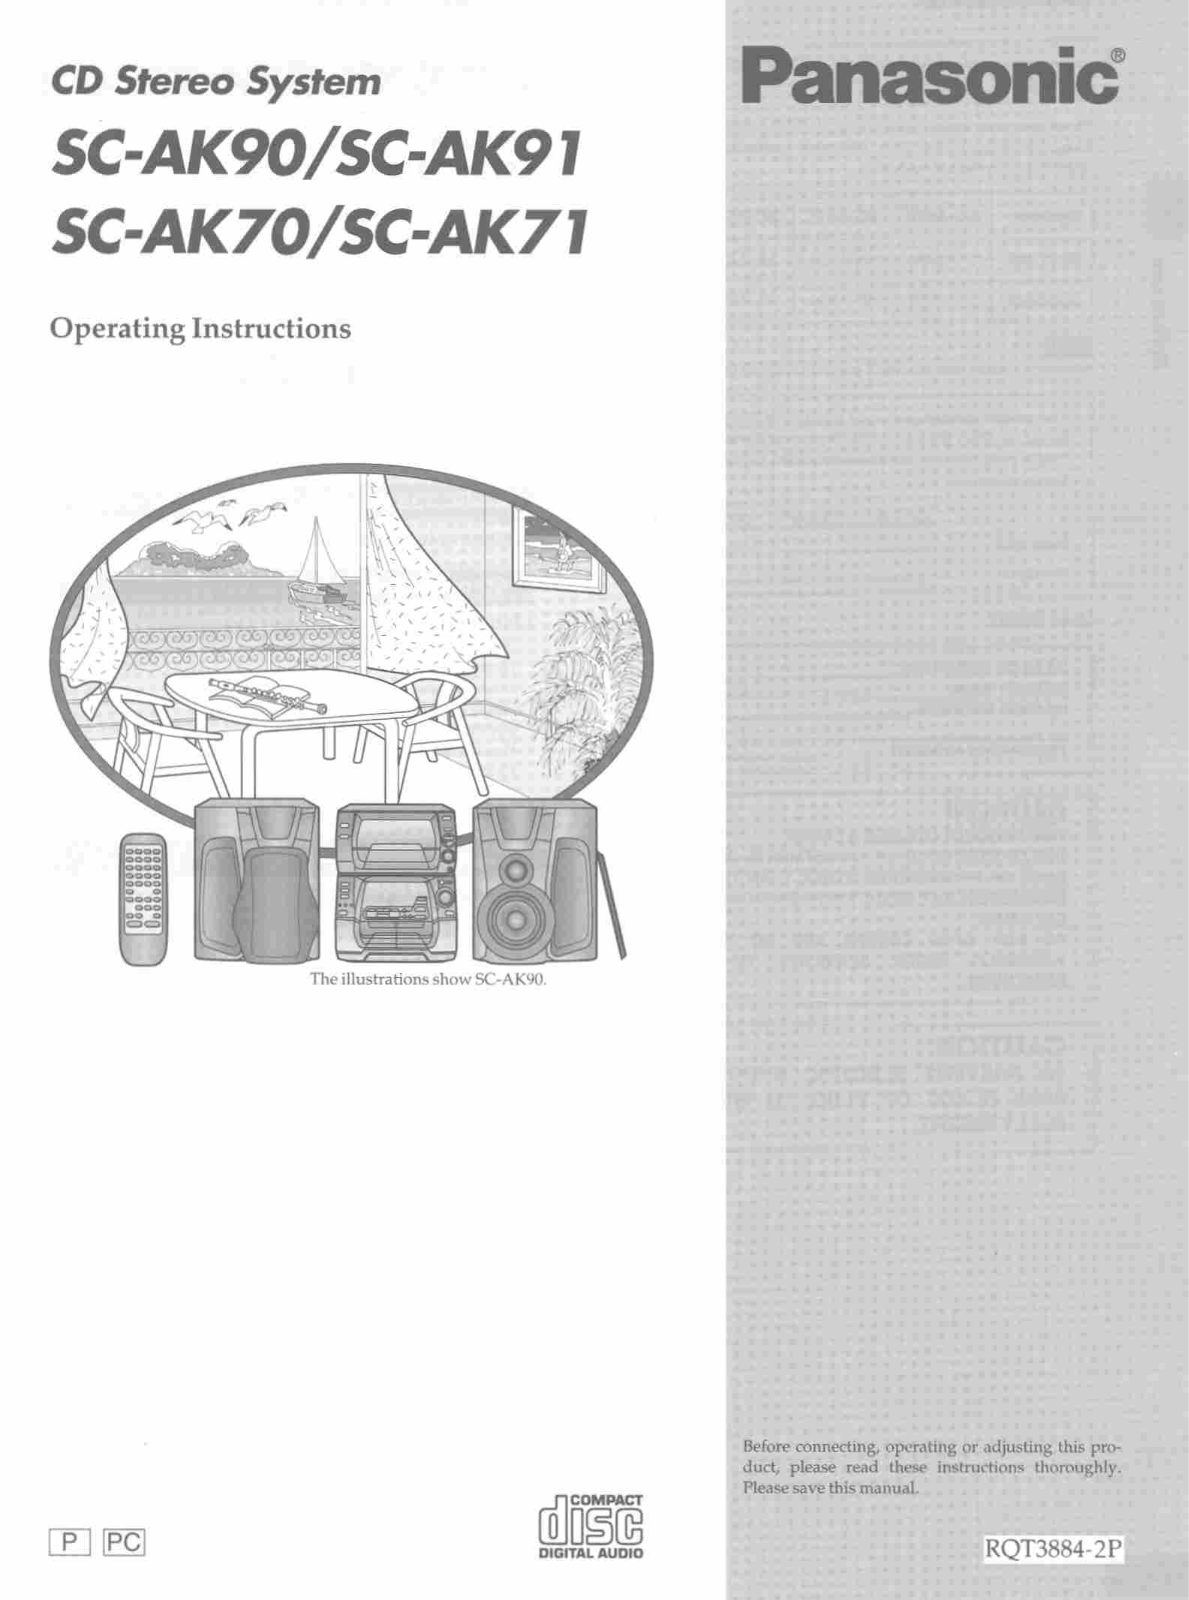 Panasonic SCAK70 User Manual